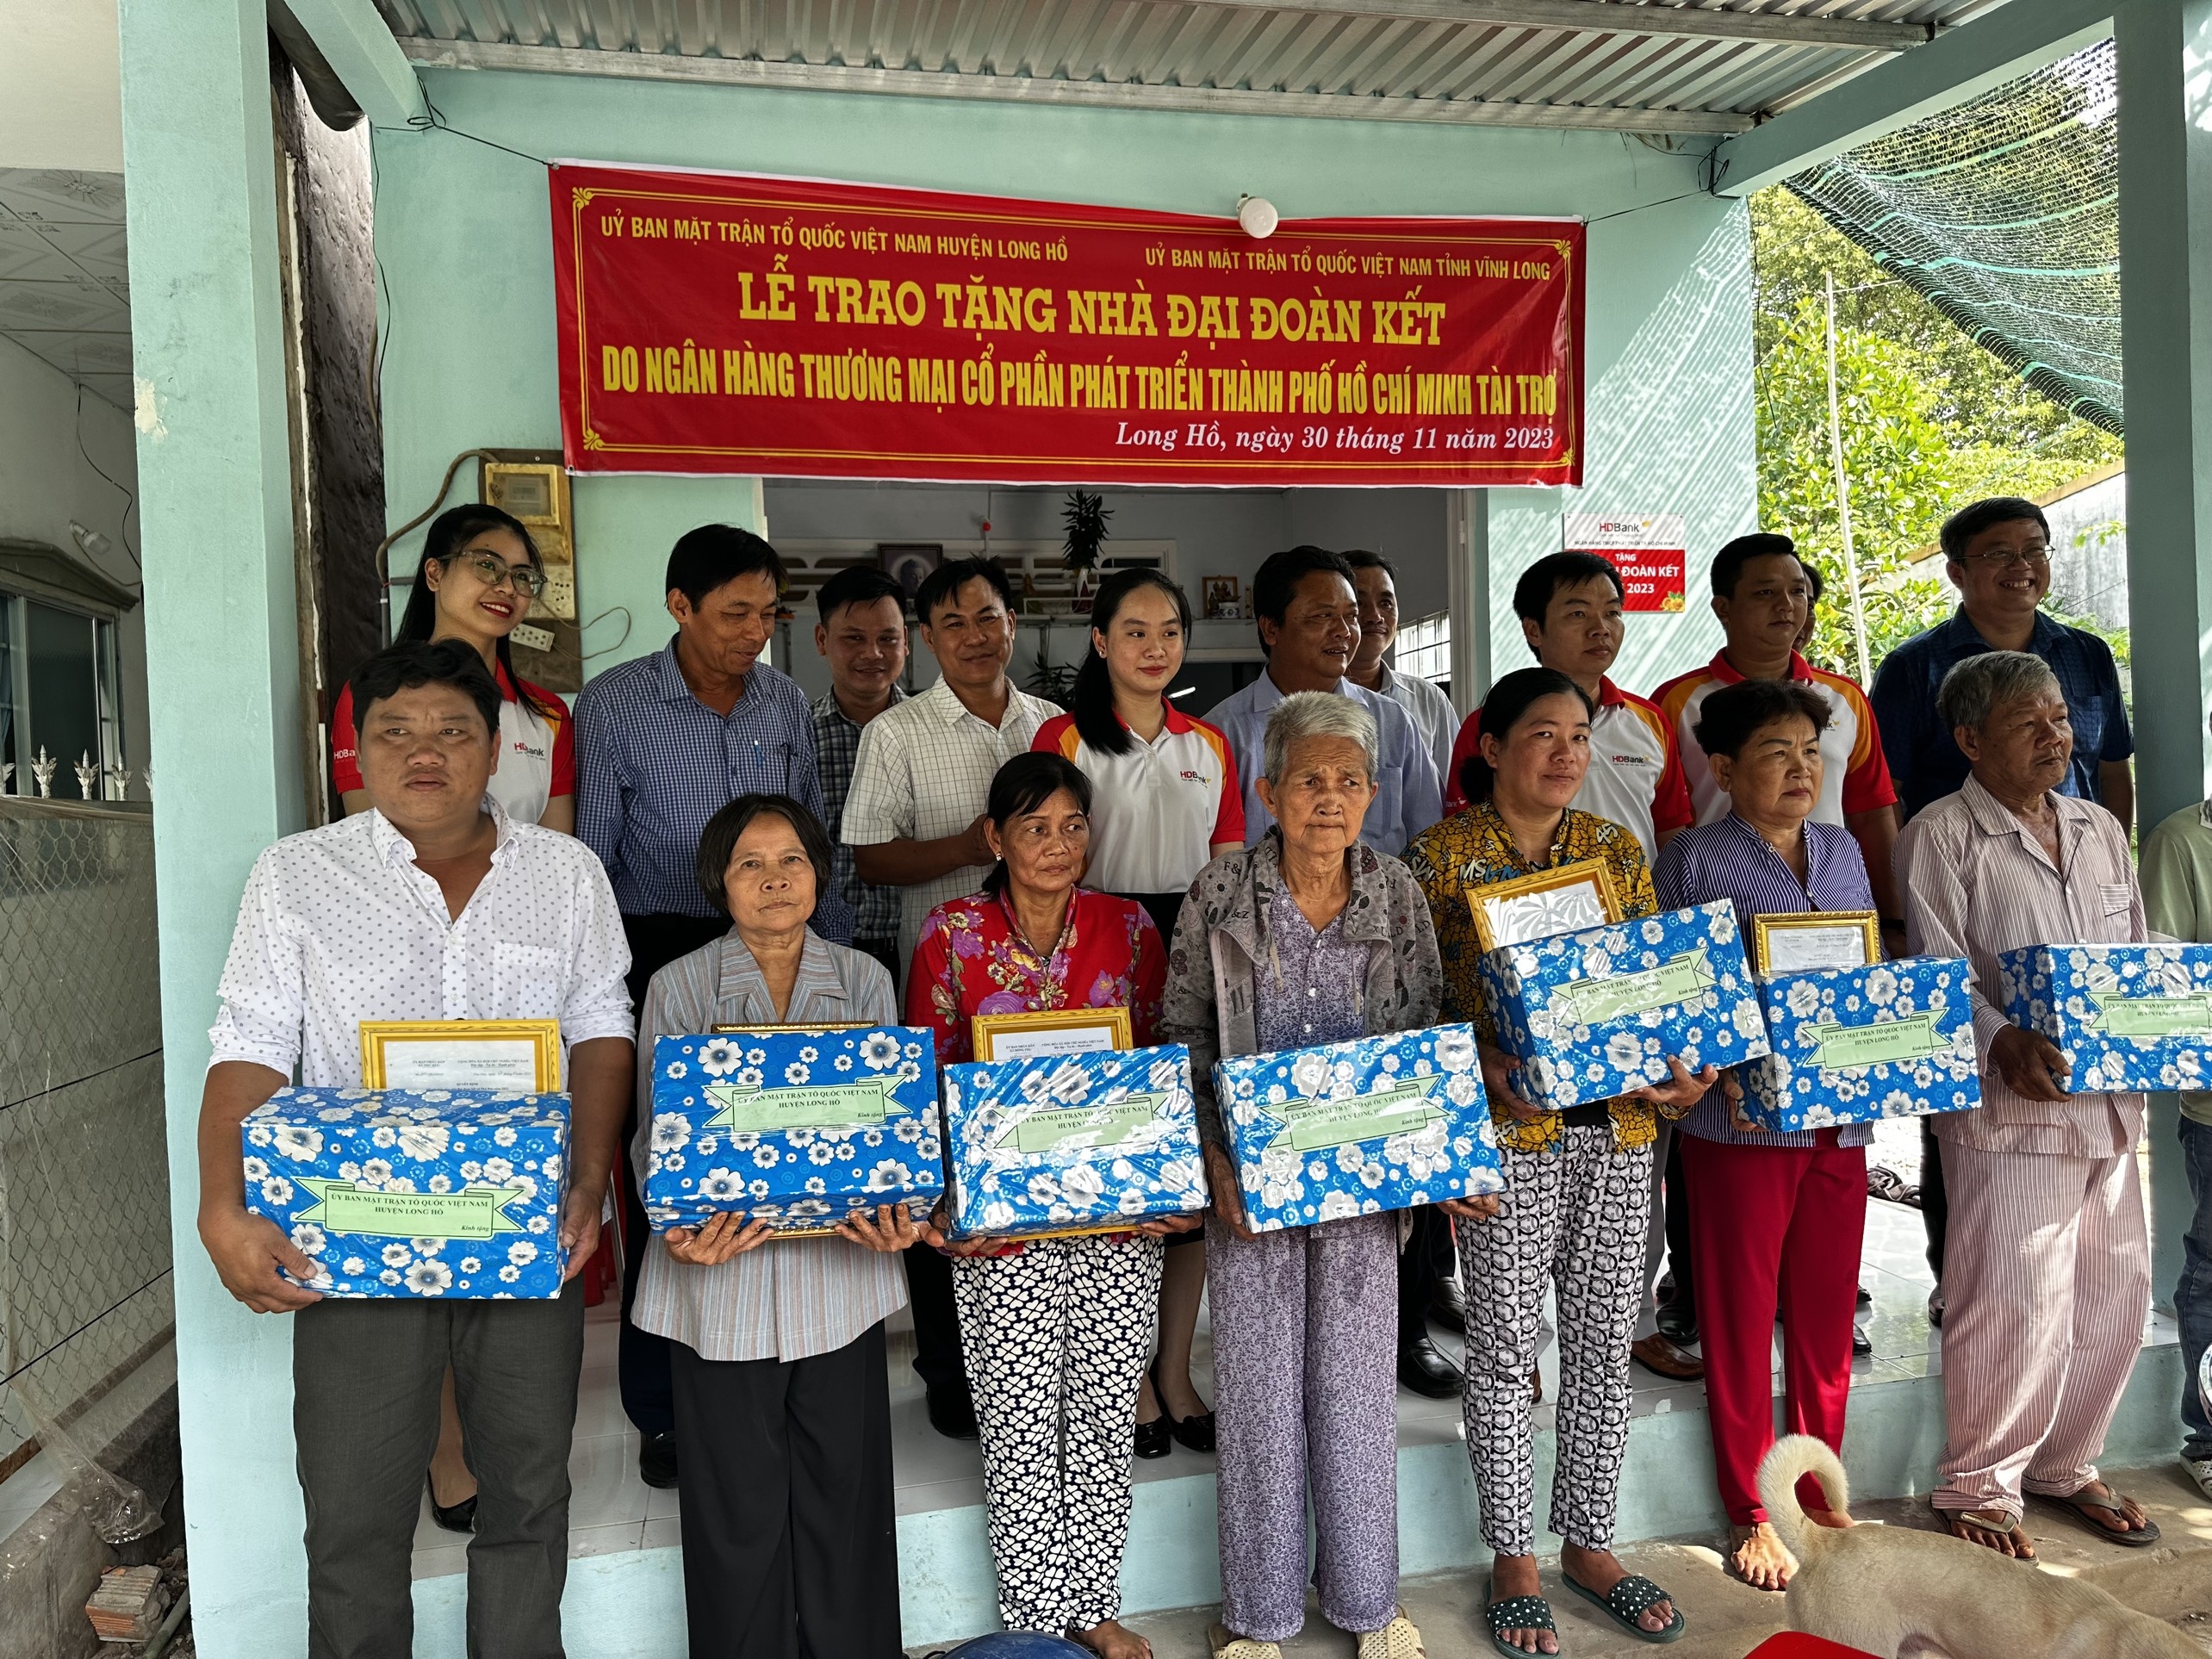 Tại huyện Long Hồ tỉnh Vĩnh Long, HDBank đã trao tặng 8 căn nhà đại đoàn kết cho hộ nghèo, hộ cận nghèo trên địa bàn huyện